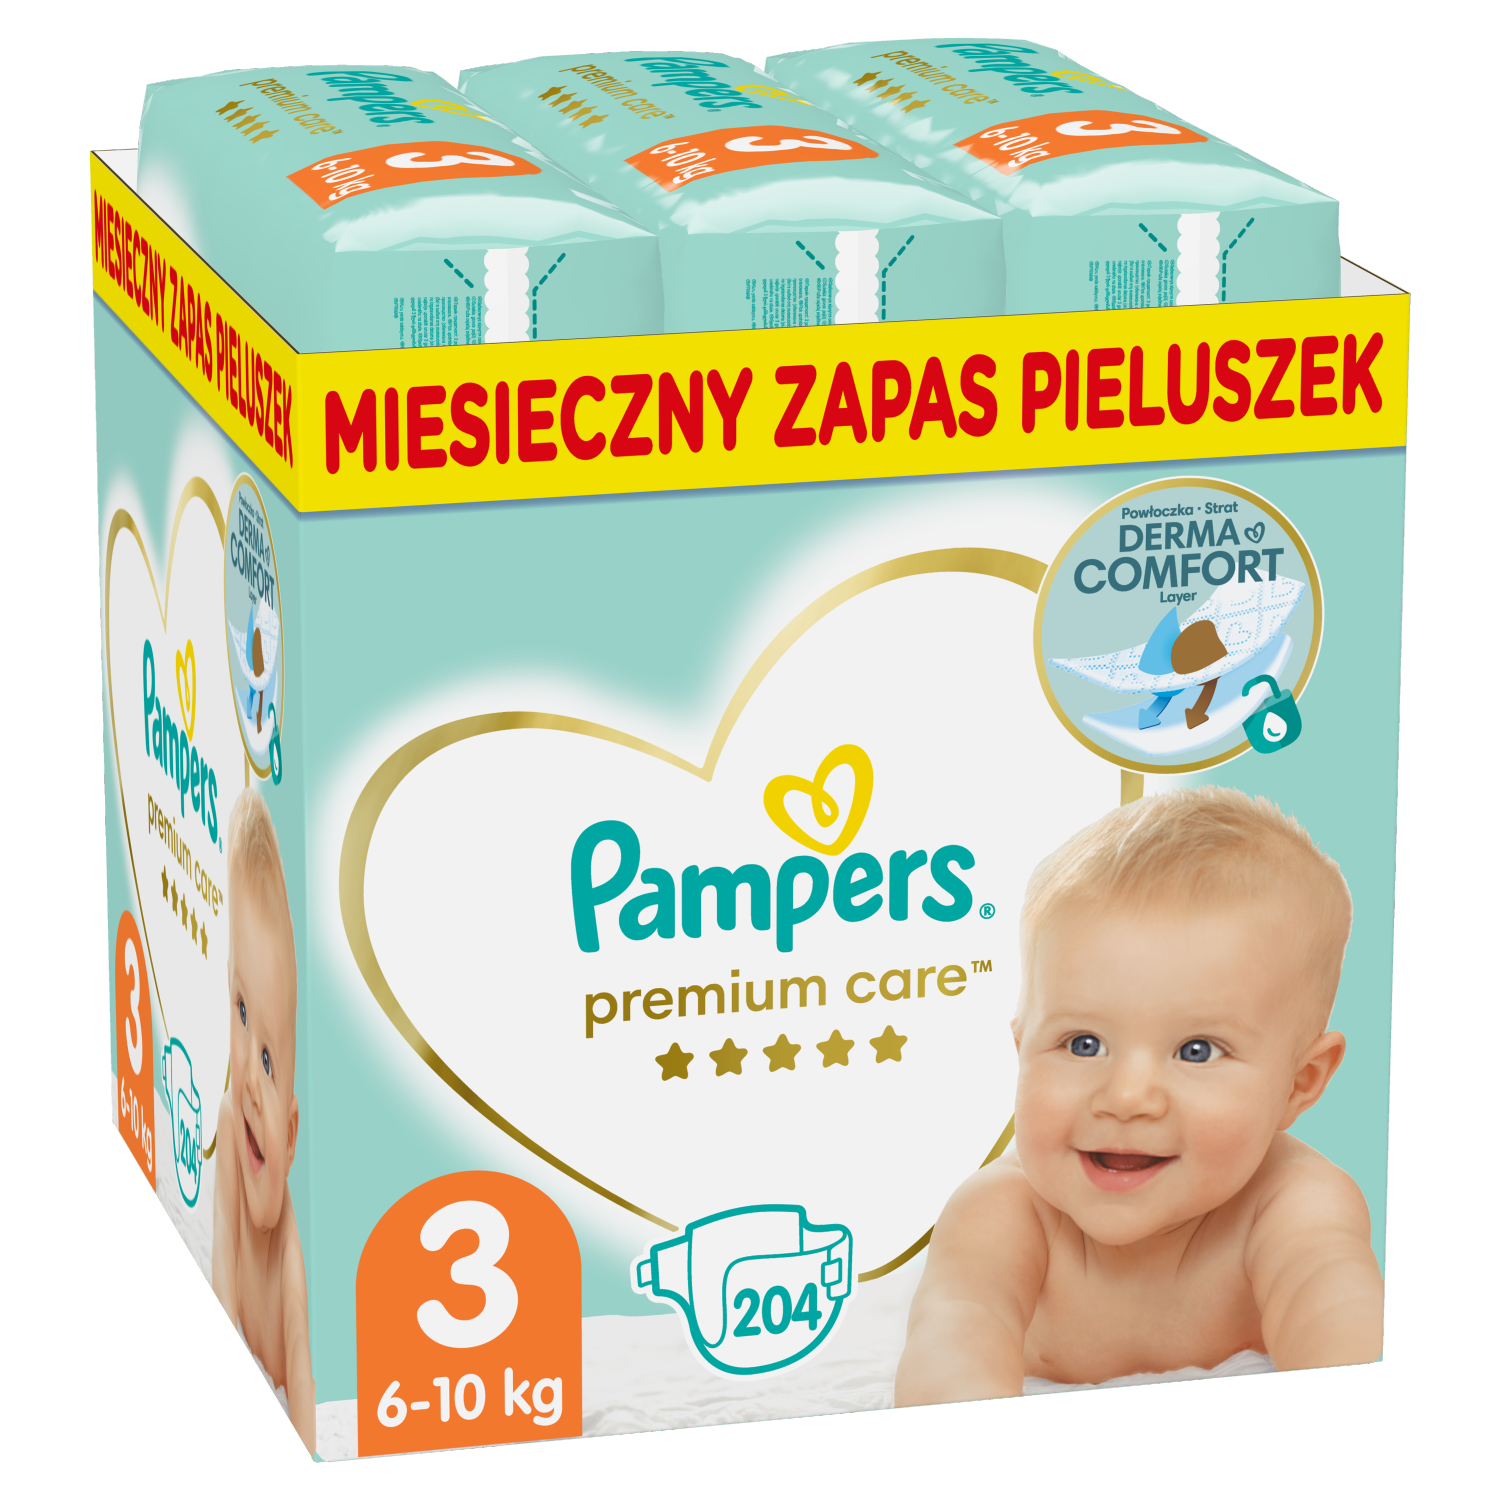 pampers premium baby pieluchy 1 2-5kg